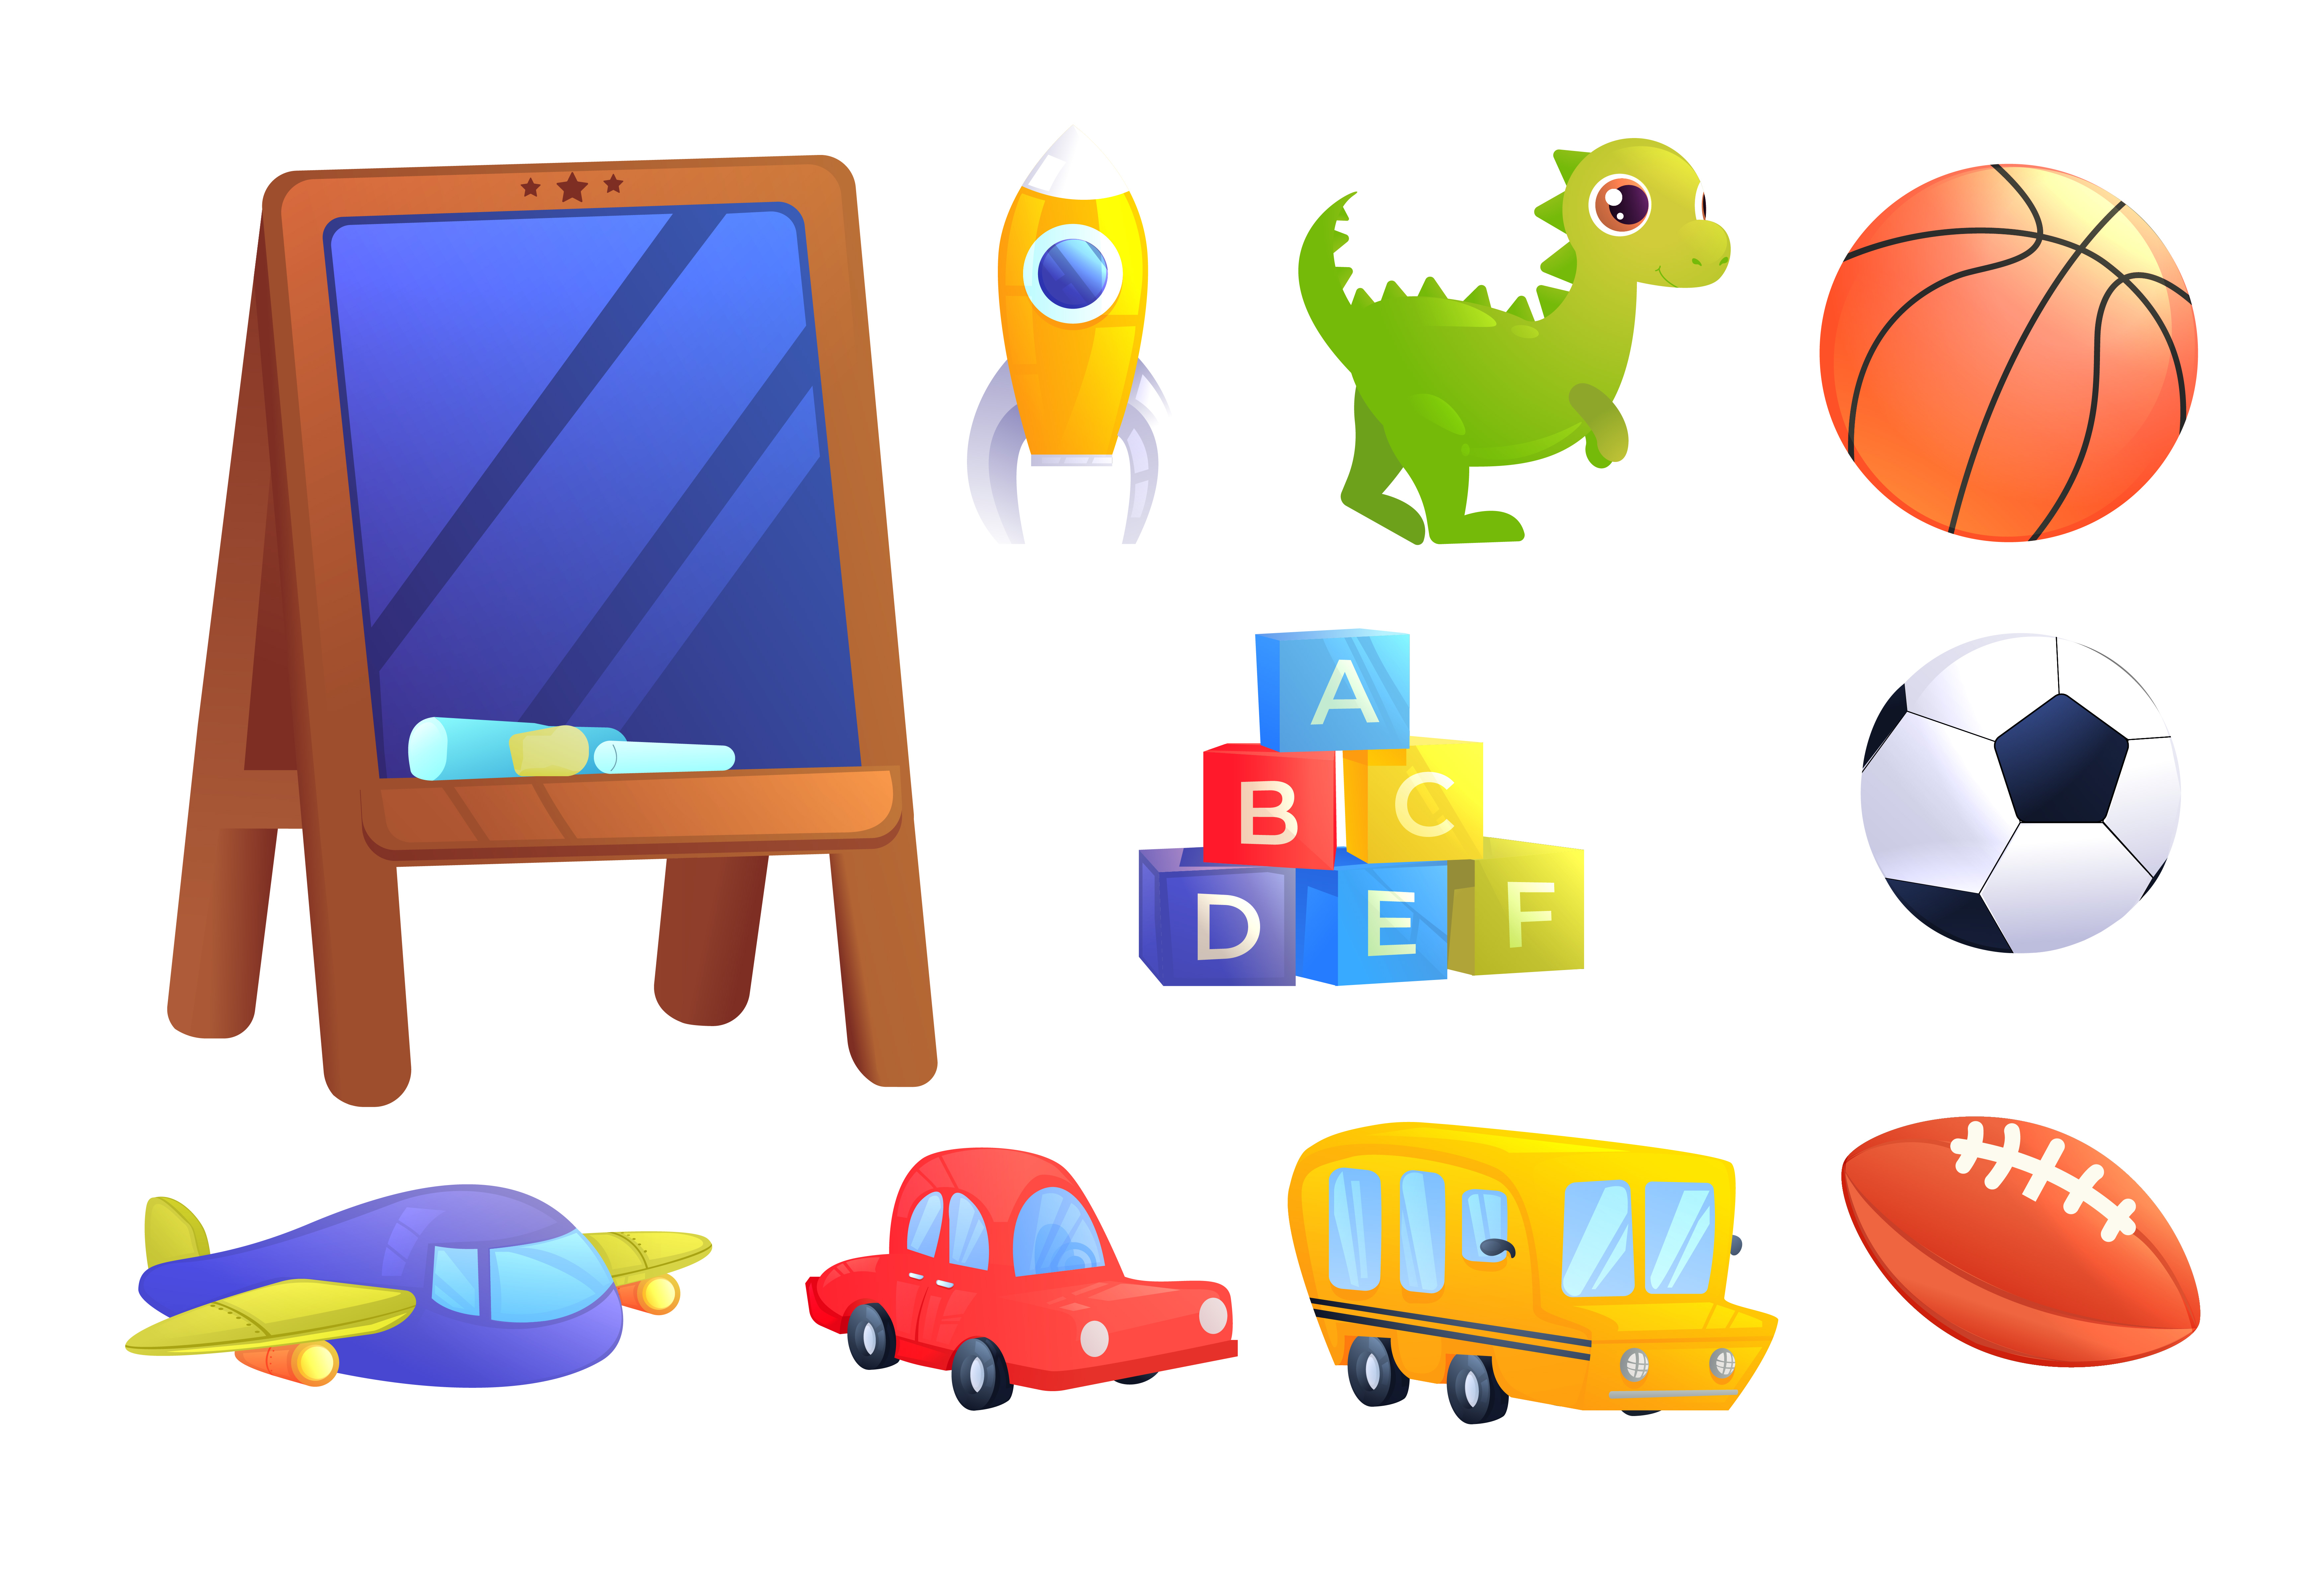 Ensemble de jouets pour enfants. Une voiture, un bus, un avion, un  dinosaure, des cubes avec des lettres de l'alphabet, un ballon de sport  pour le jeu des enfants et un conseil